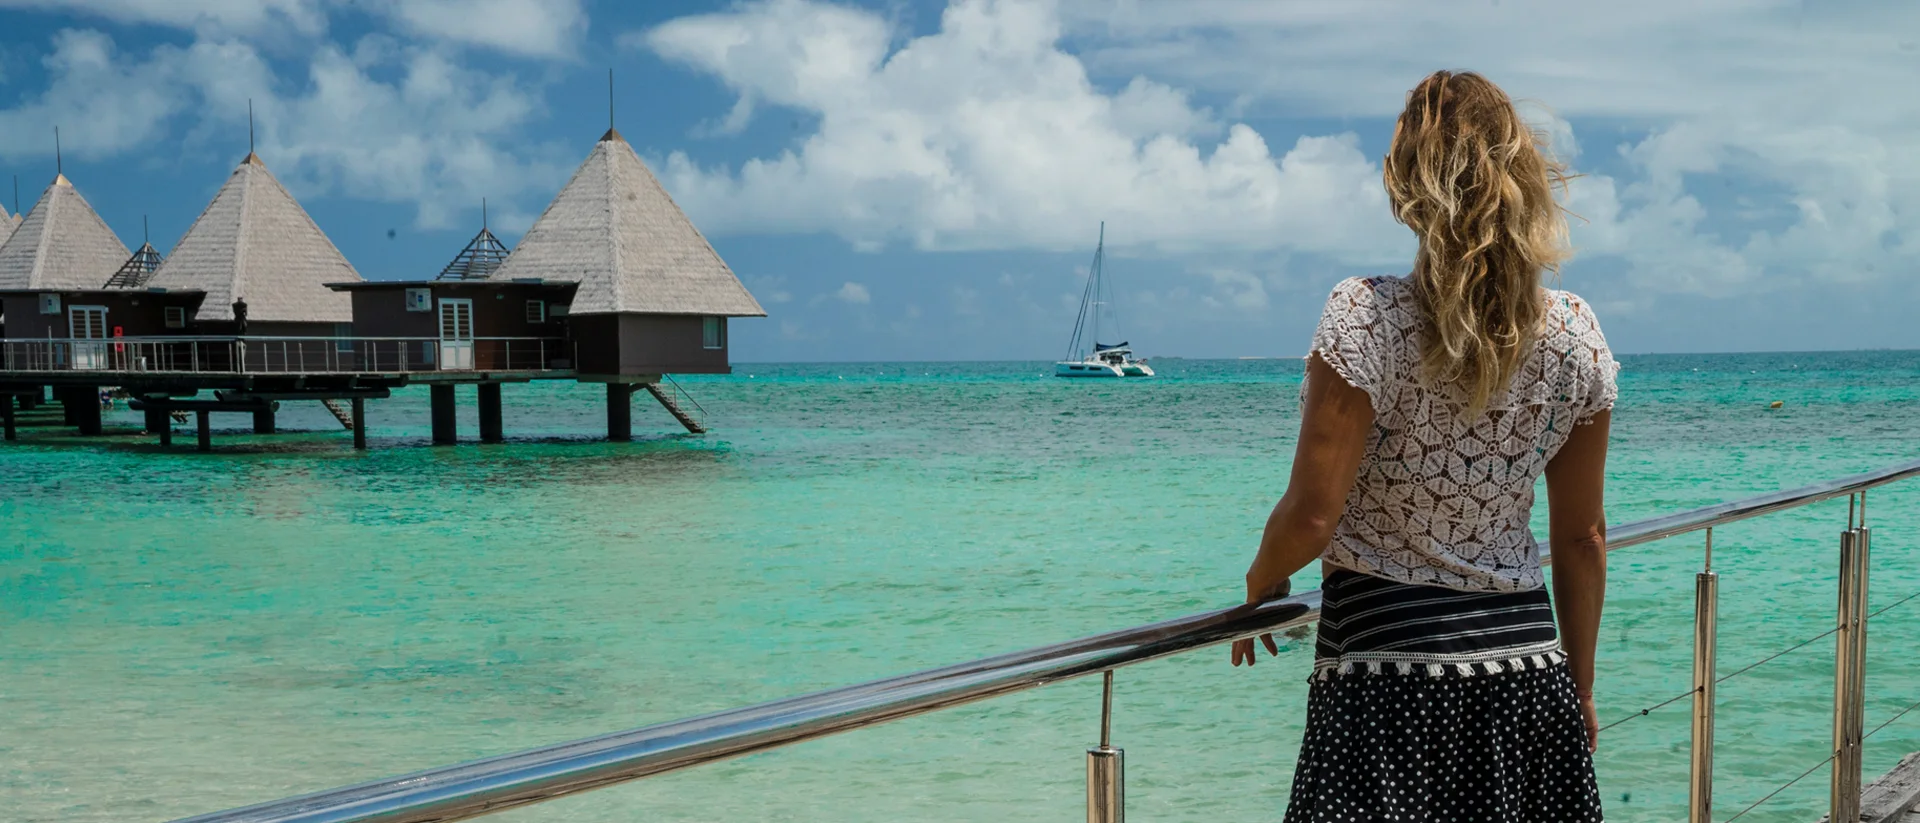 Kvinna tittar på stuga på kristallklar strand och katamaran med skeppare